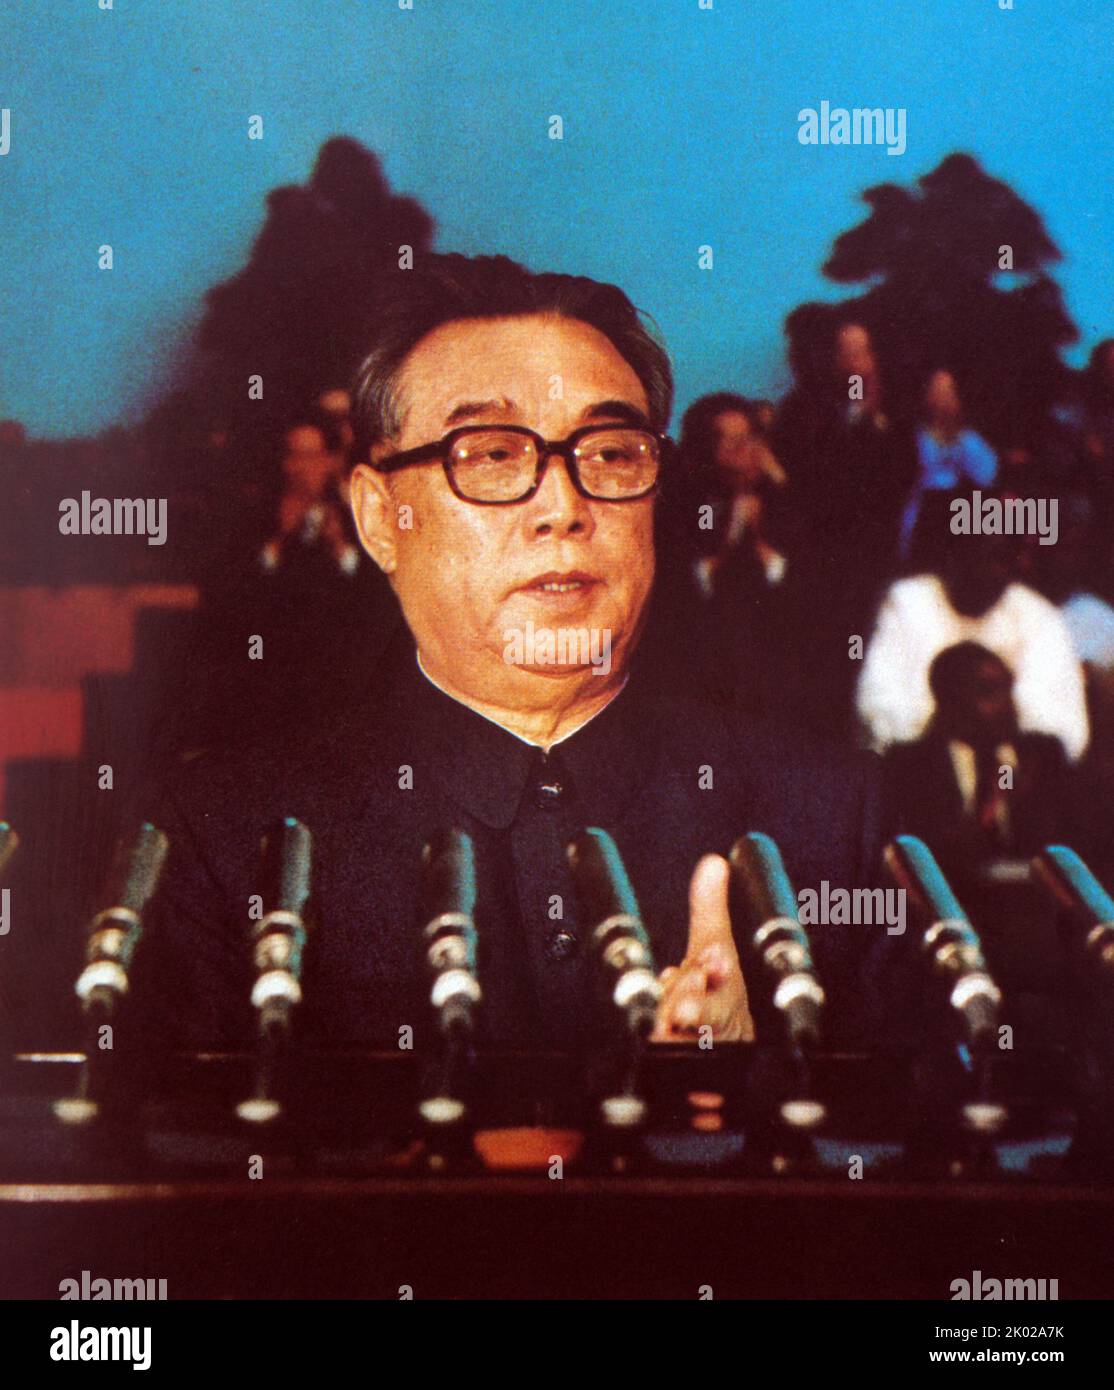 Il Presidente Kim il Sung ha tenuto un discorso storico in occasione di una riunione congiunta del Comitato centrale del Partito operaio di Corea e dell'Assemblea suprema del popolo della Repubblica popolare di Corea. Foto Stock